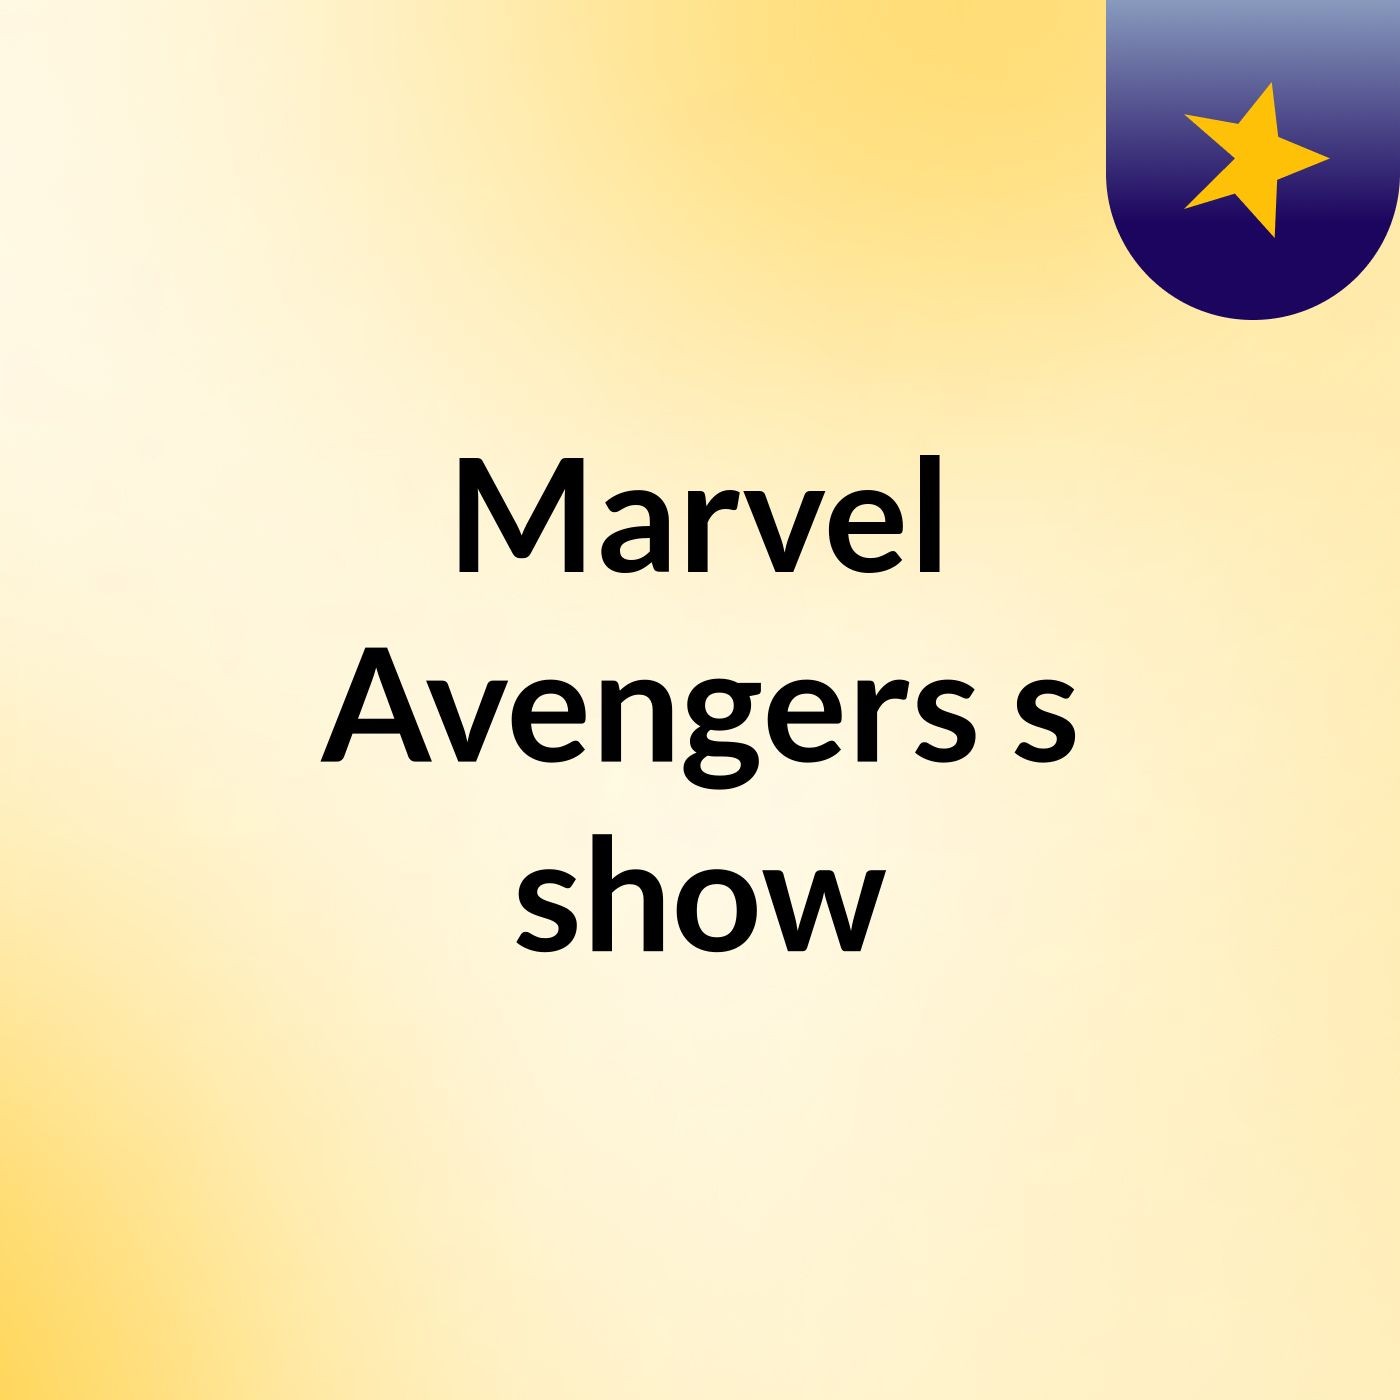 Marvel Avengers's show